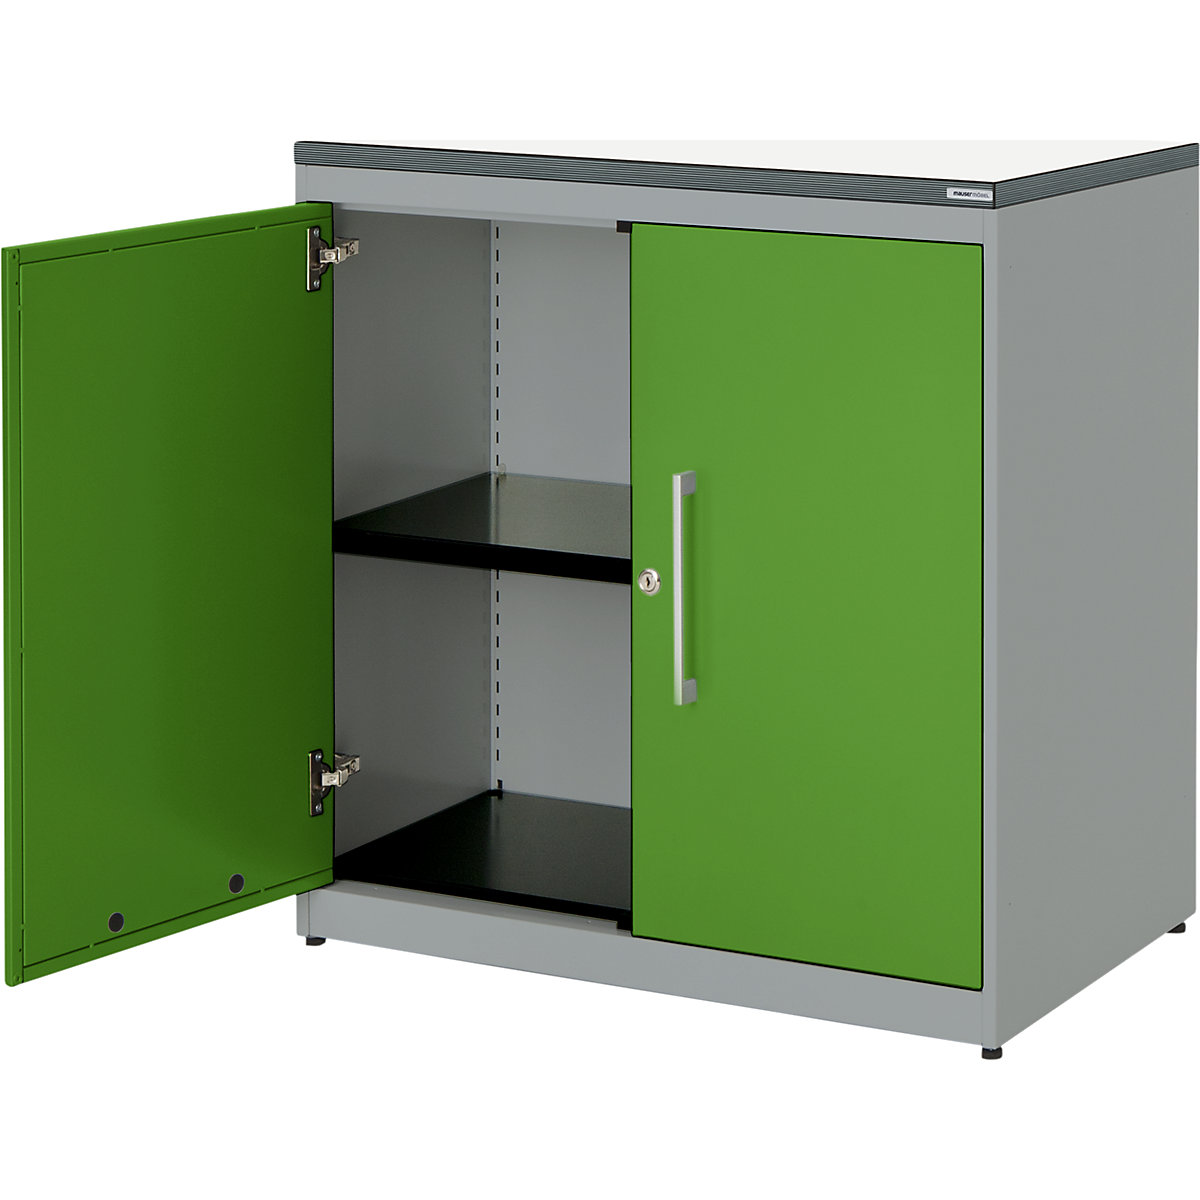 mauser – Dulap cu uși cu canaturi, î. x lăț. 830 x 800 mm, blat din plastic, 1 poliță, alb aluminiu / verde gălbui / alb